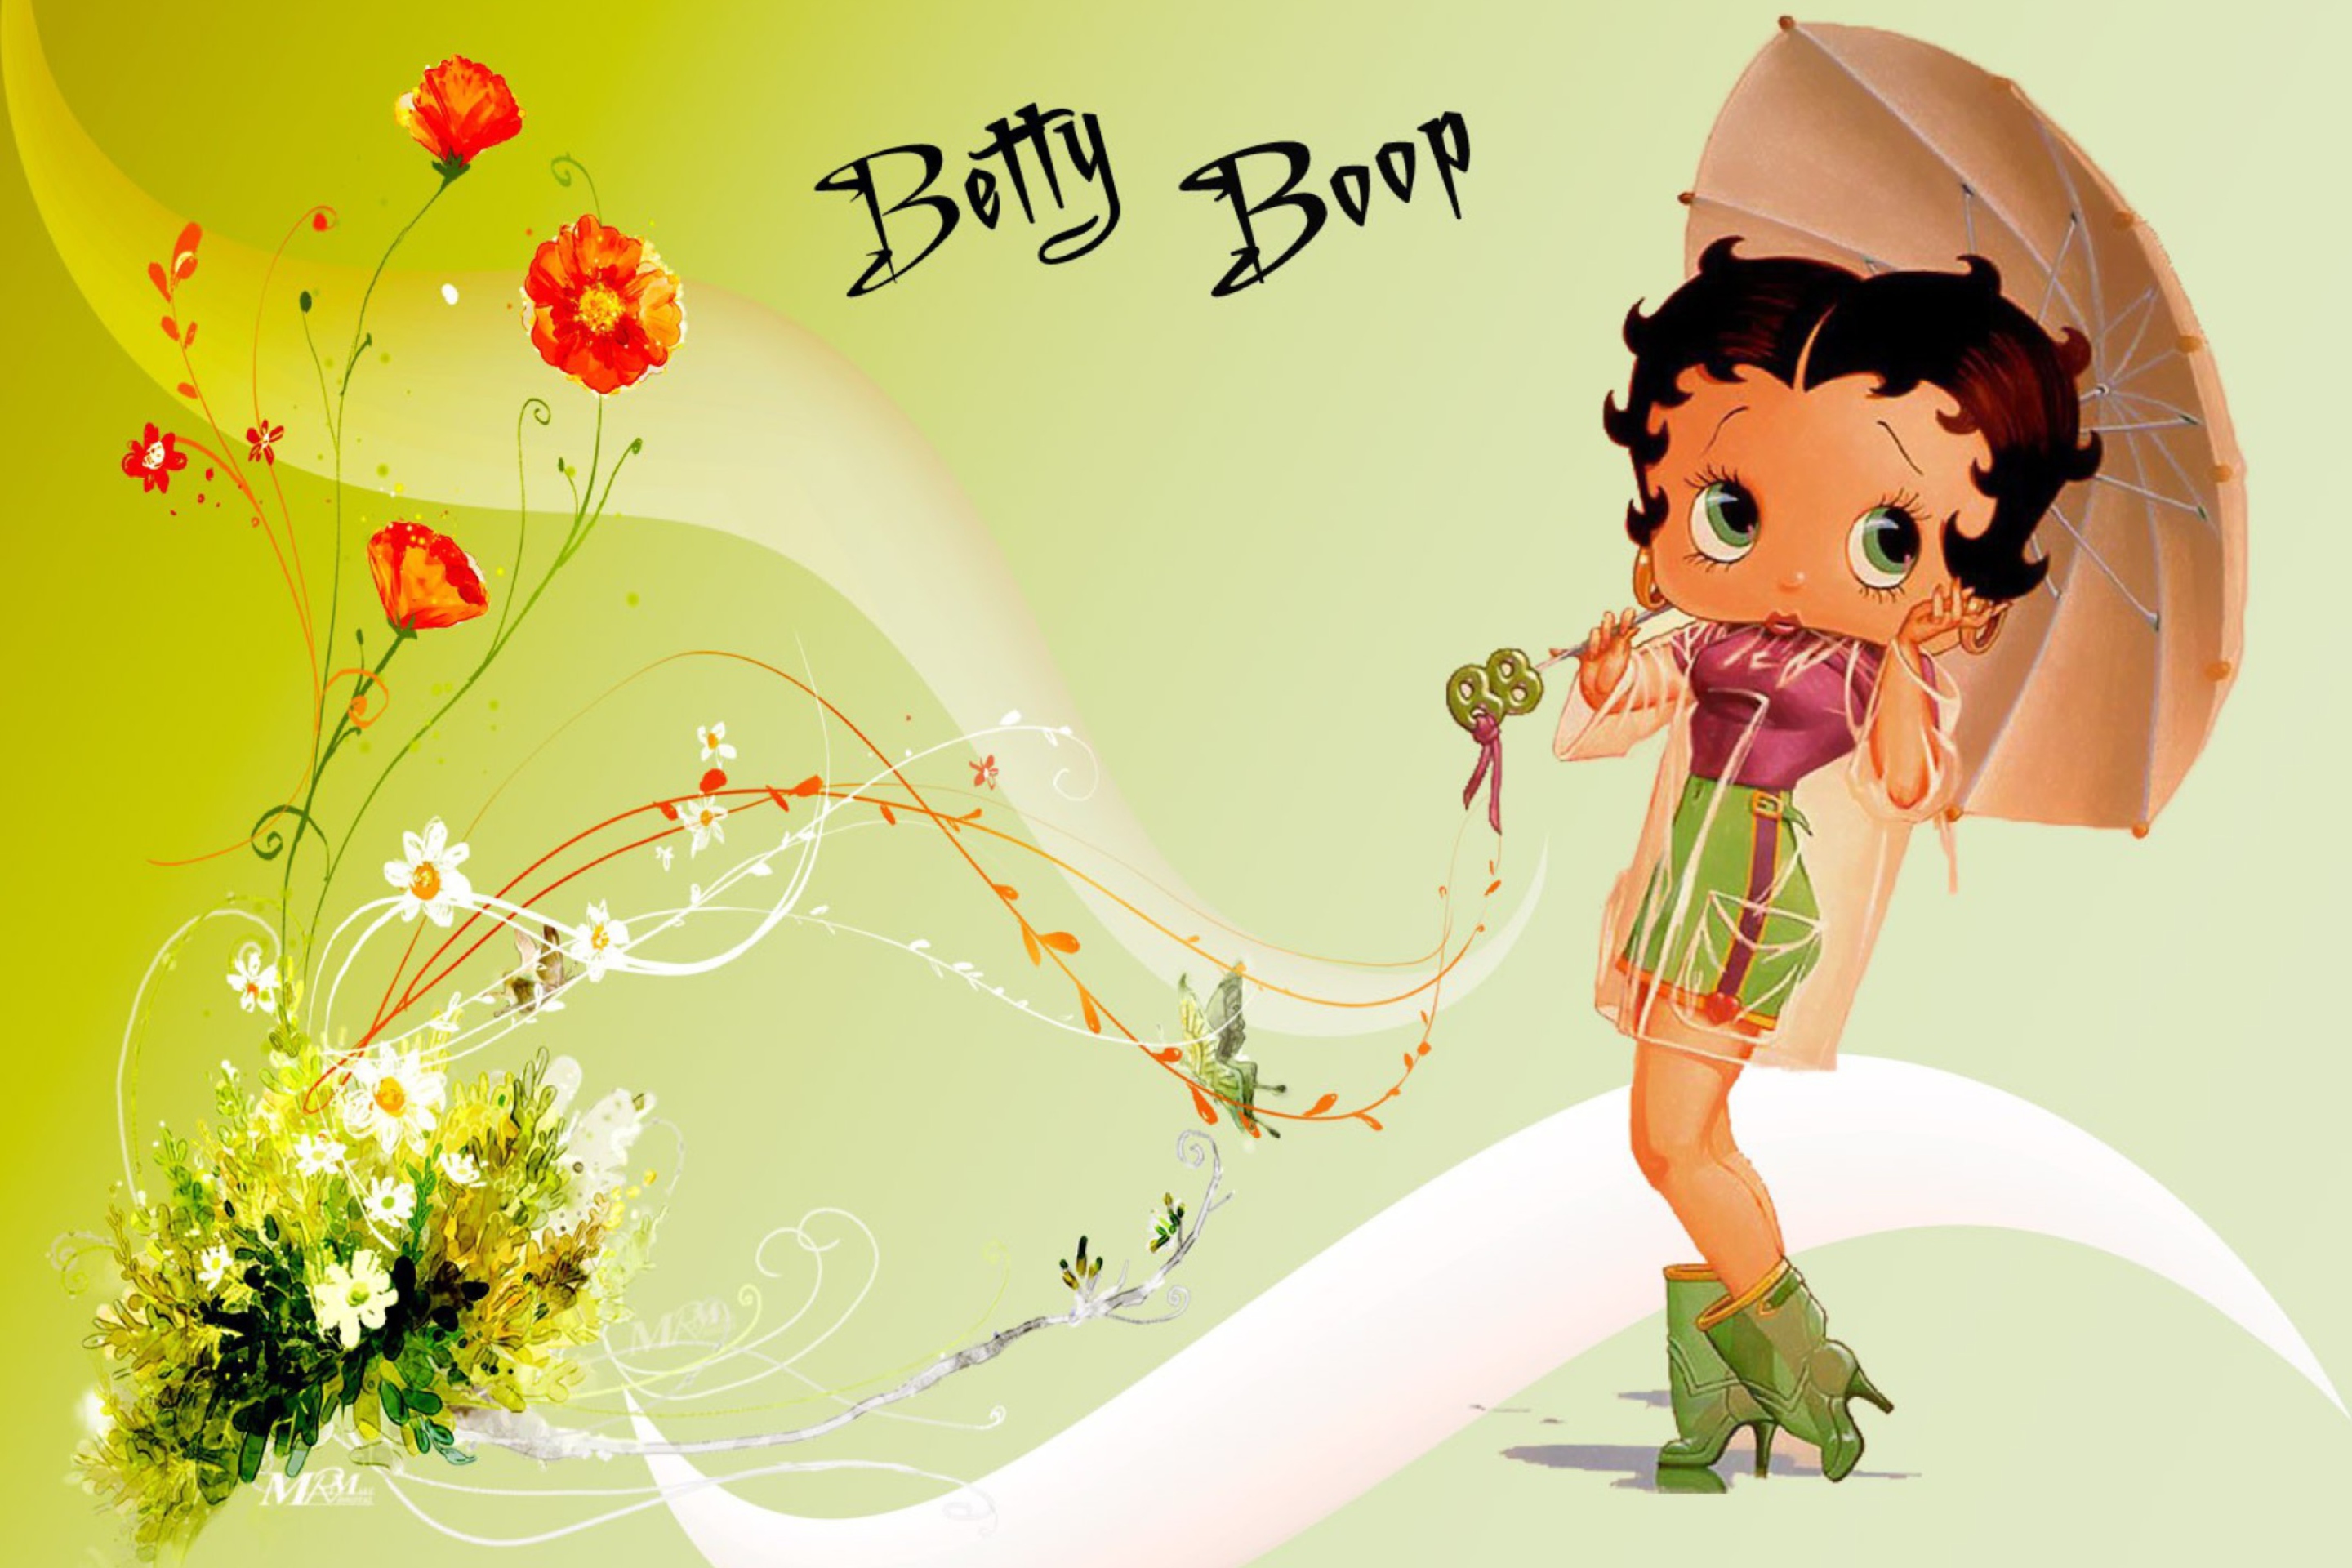 Betty Boop wallpaper 2880x1920